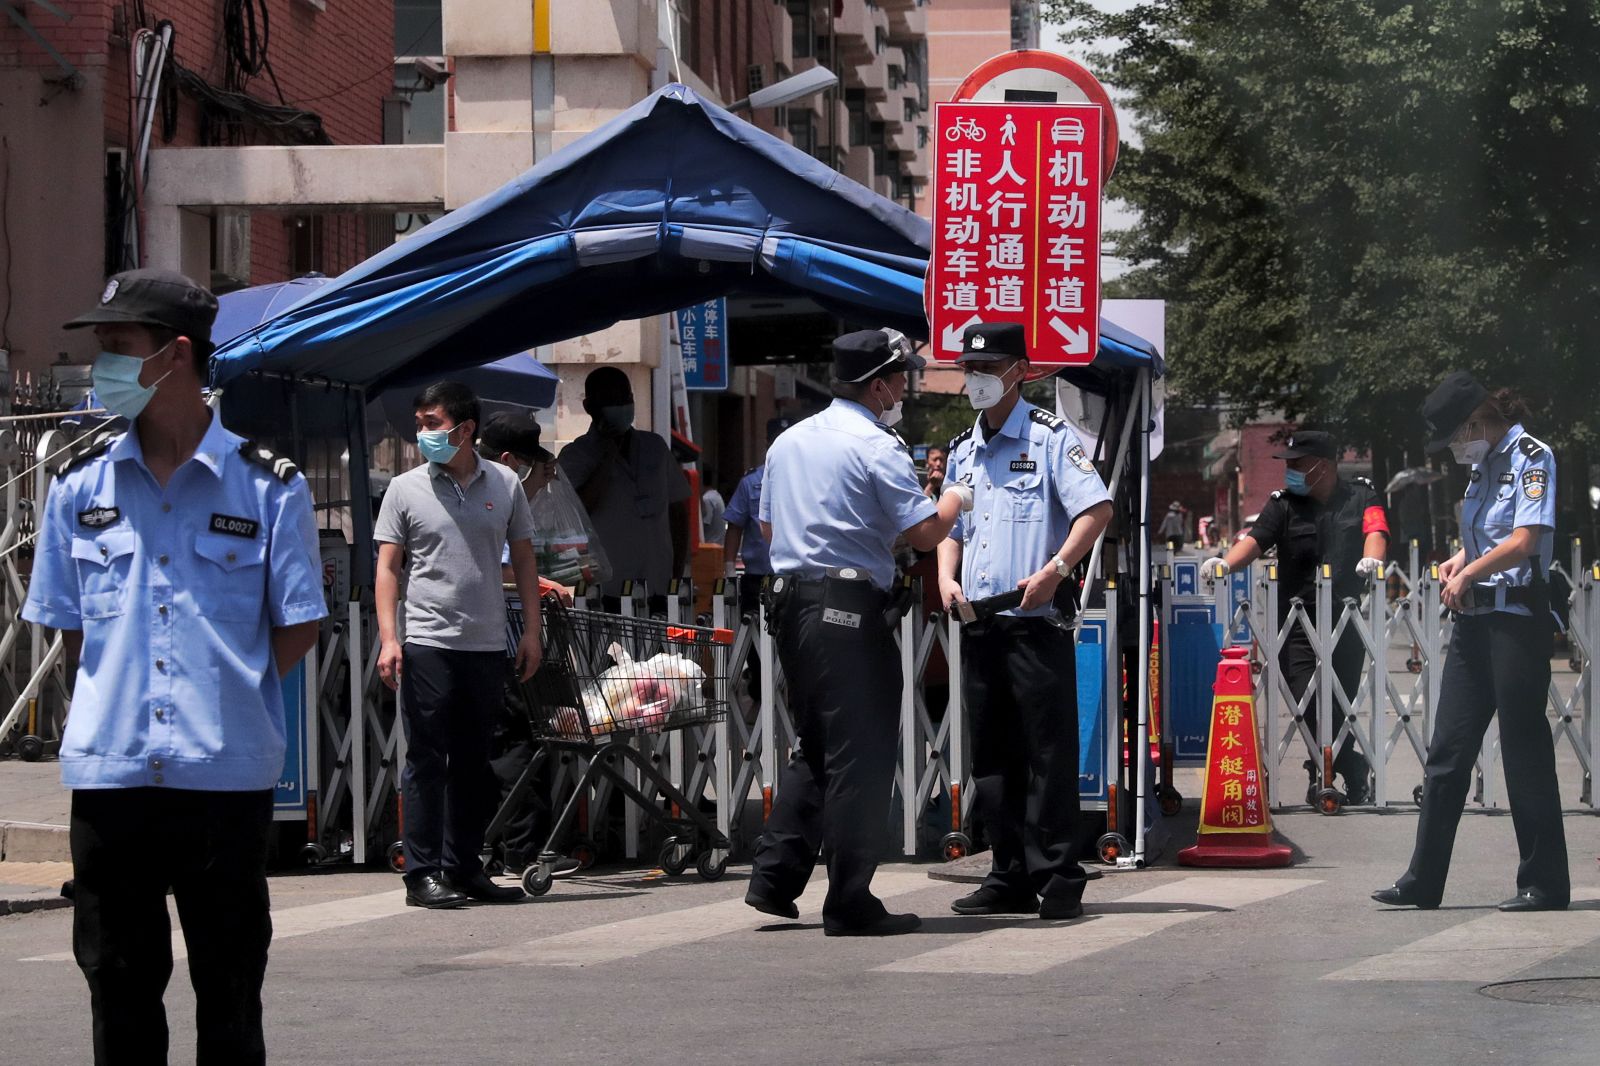 V Pekingu sa opäť šíri koronavírus. Nové ohnisko nákazy sa spája s tržnicou, kde predávajú mäso a zeleninu